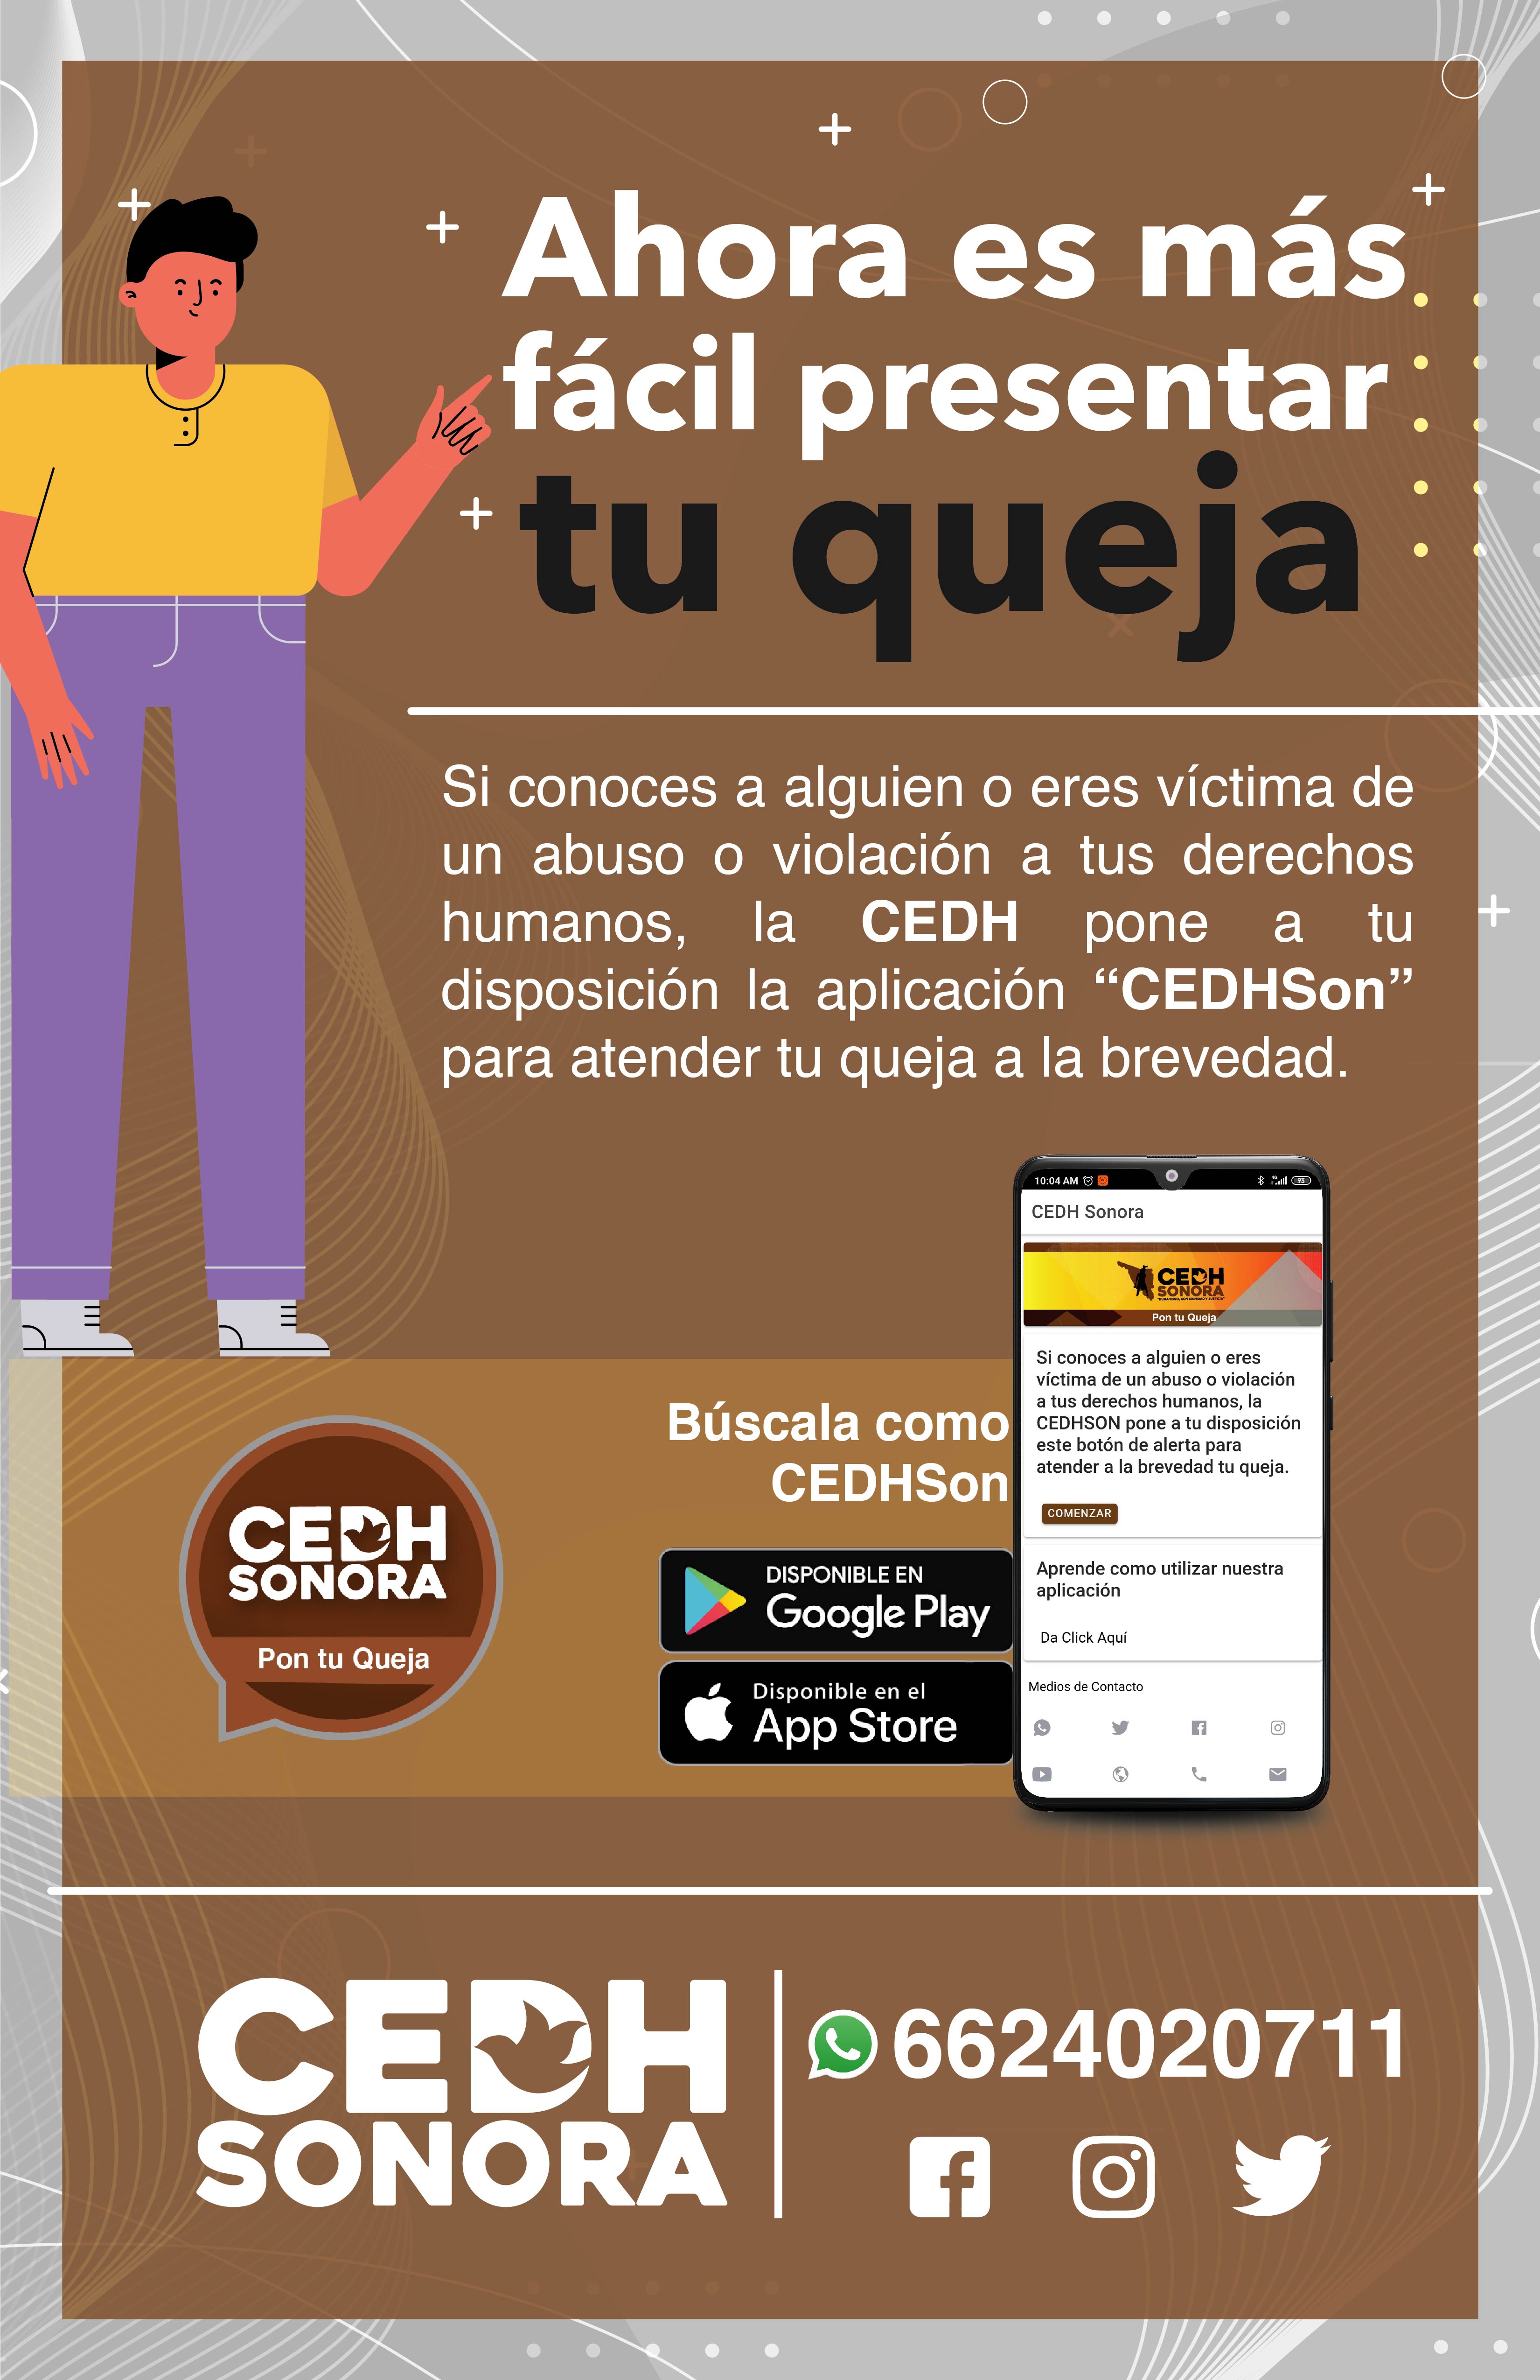 Crea CEDH Sonora App y Whatsapp para quejas